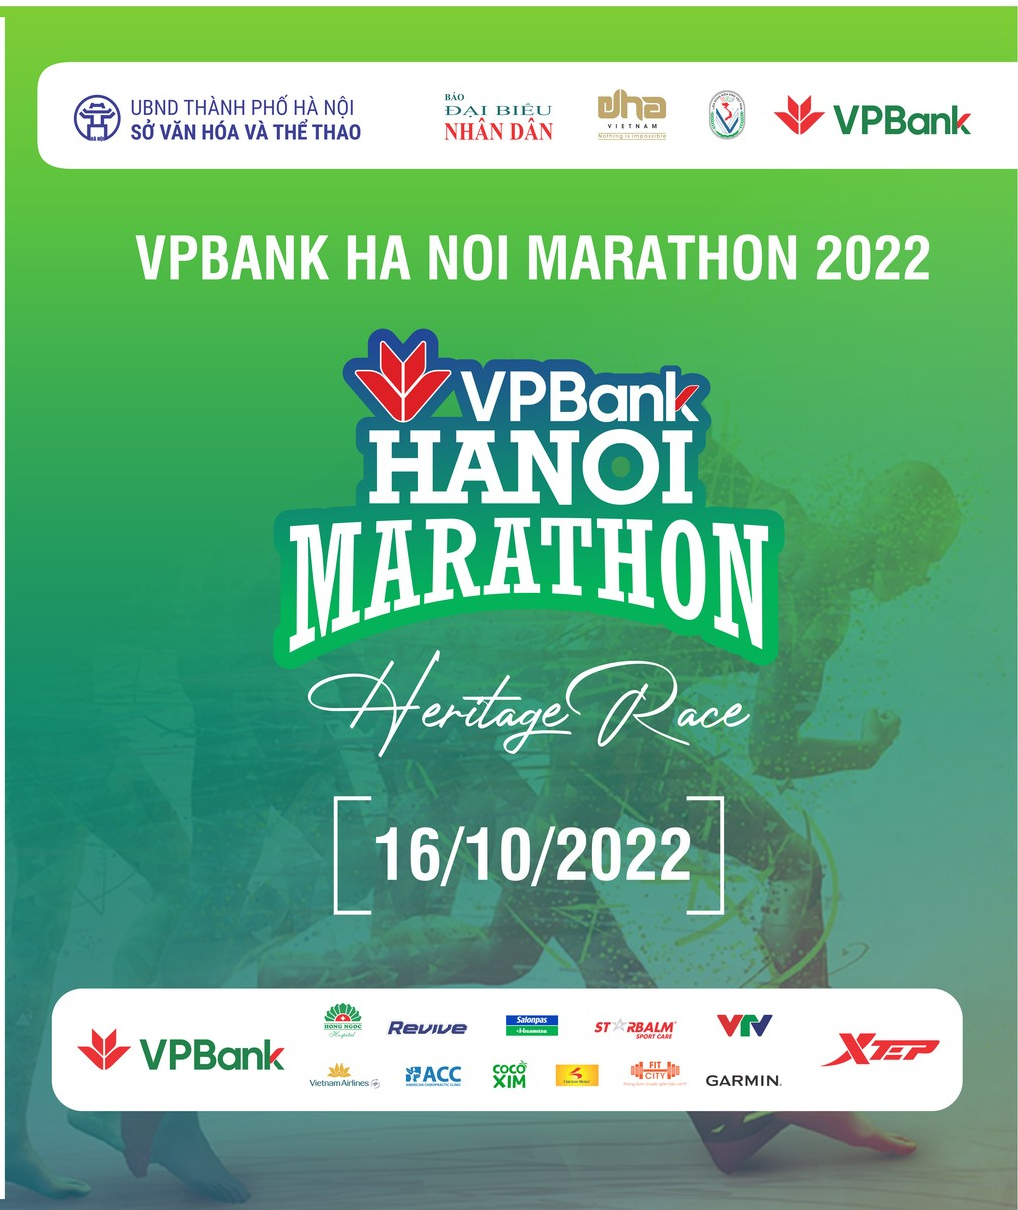 Unique Points On VPBank Hanoi Marathon 2022 Route